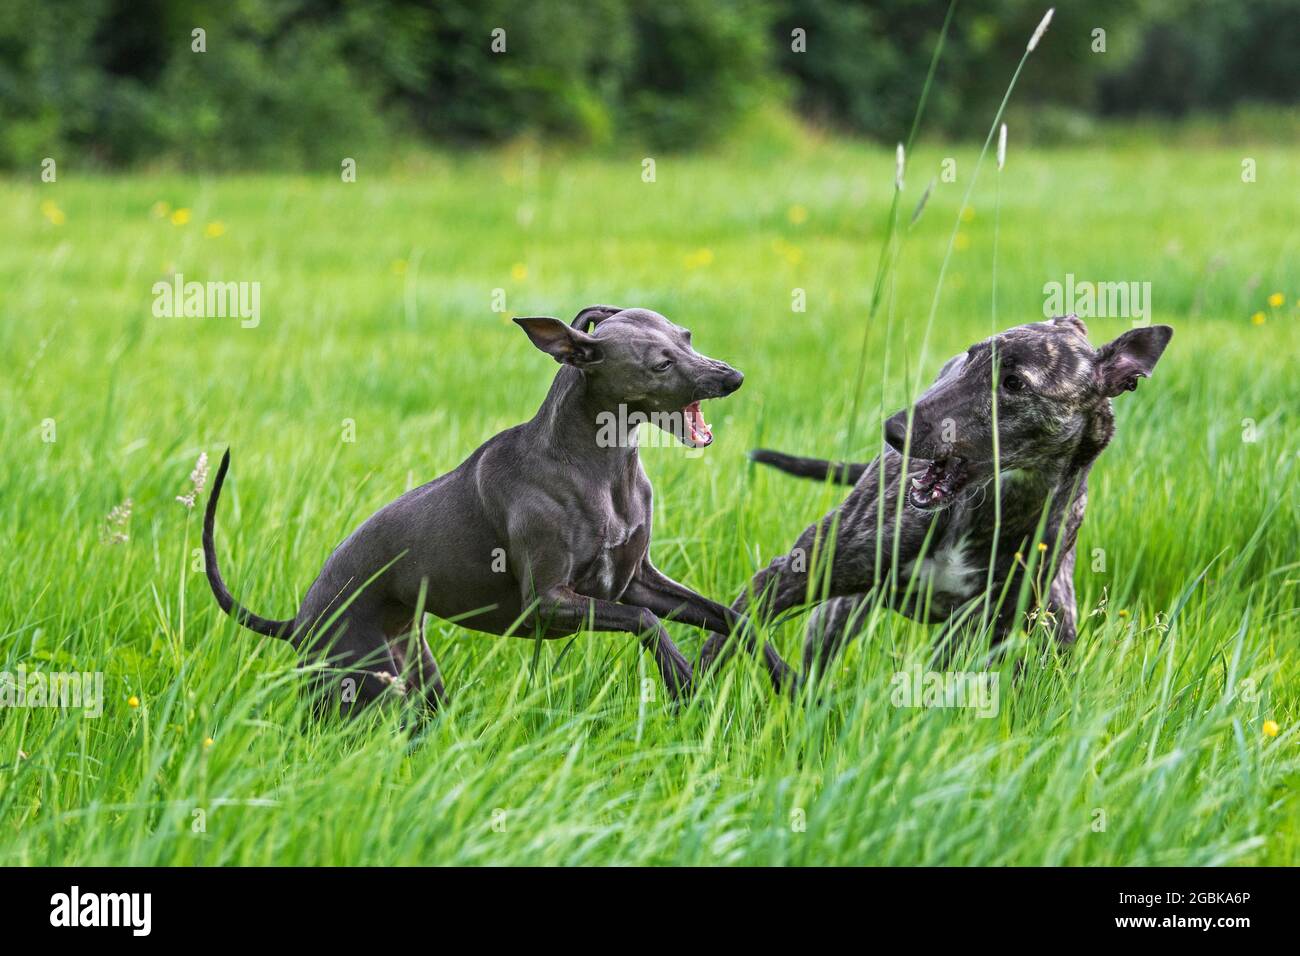 Gestromt Galgo Español / barcino Spanish galgo / Spanischer Windhund und und italienischer Greyhound / Piccolo levriero Italiano laufen auf dem Feld Stockfoto